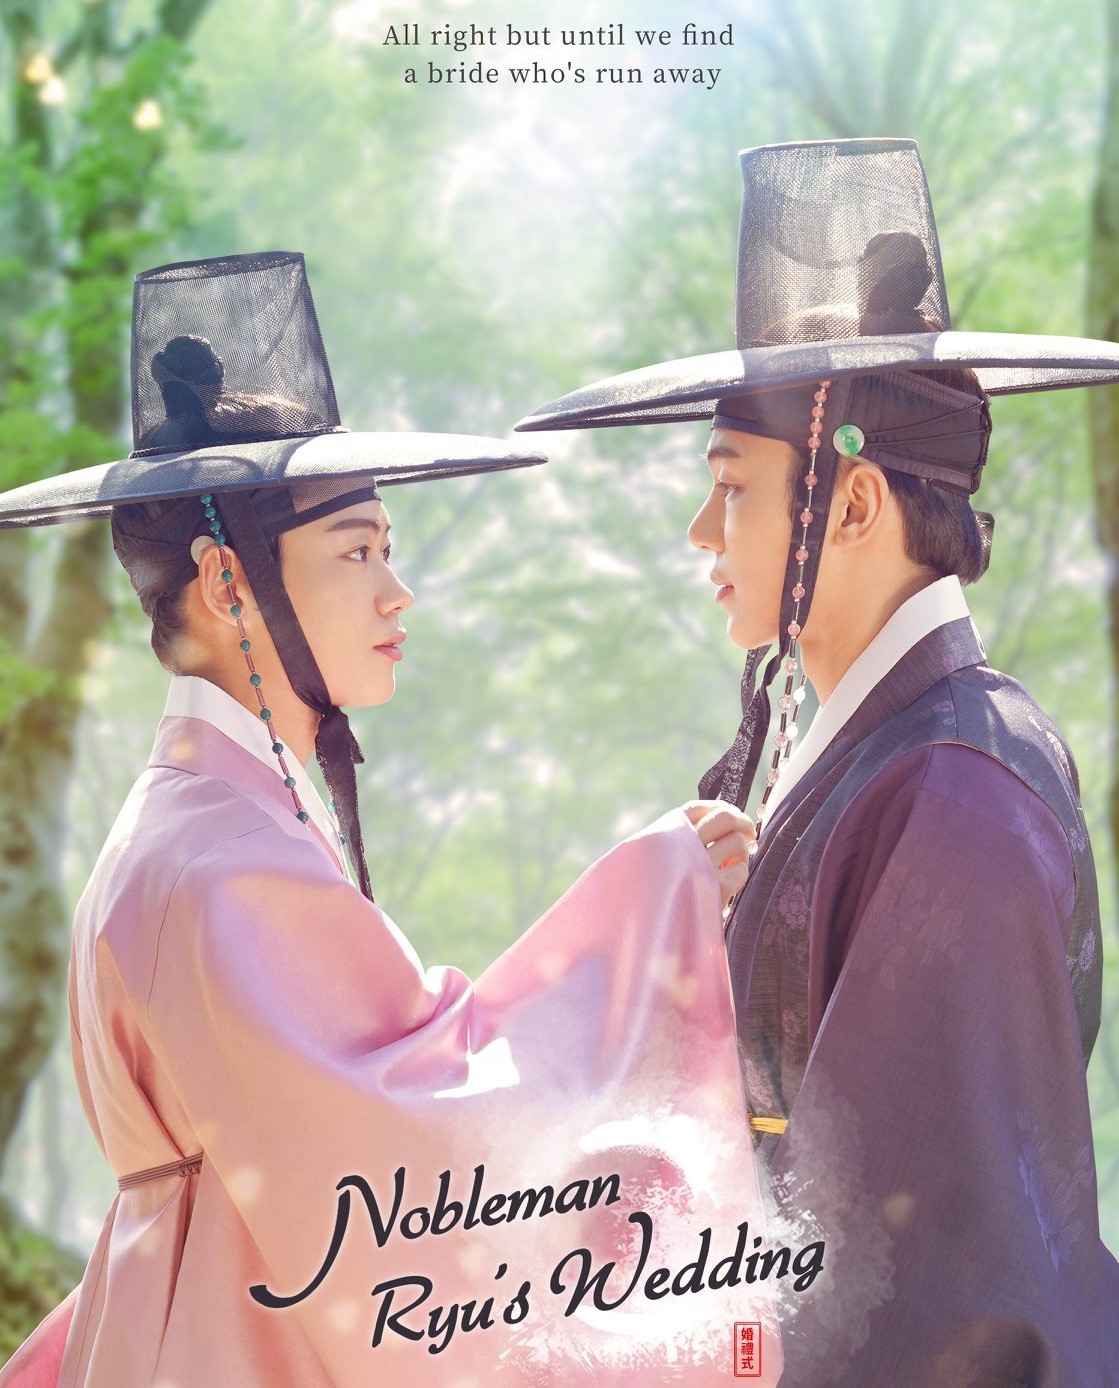 ซีรี่ย์เกาหลี Nobleman Ryu's Wedding เรื่องรักหลอกลวงแบบเฉิ่มๆในโชซอน ซับไทย